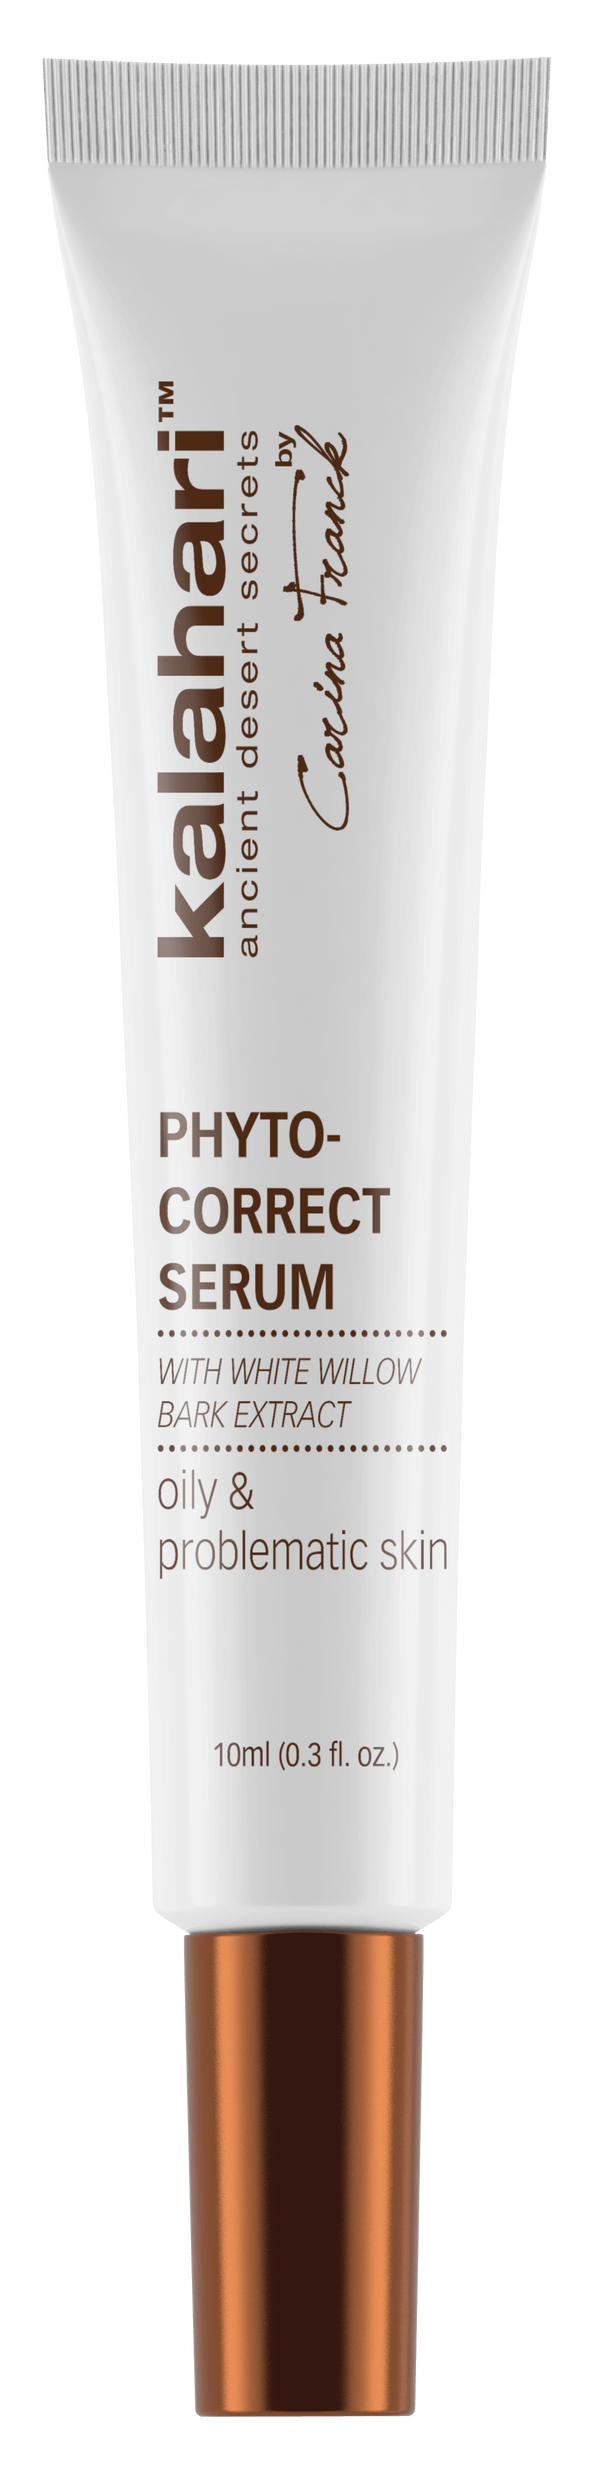 Phyto correct serum